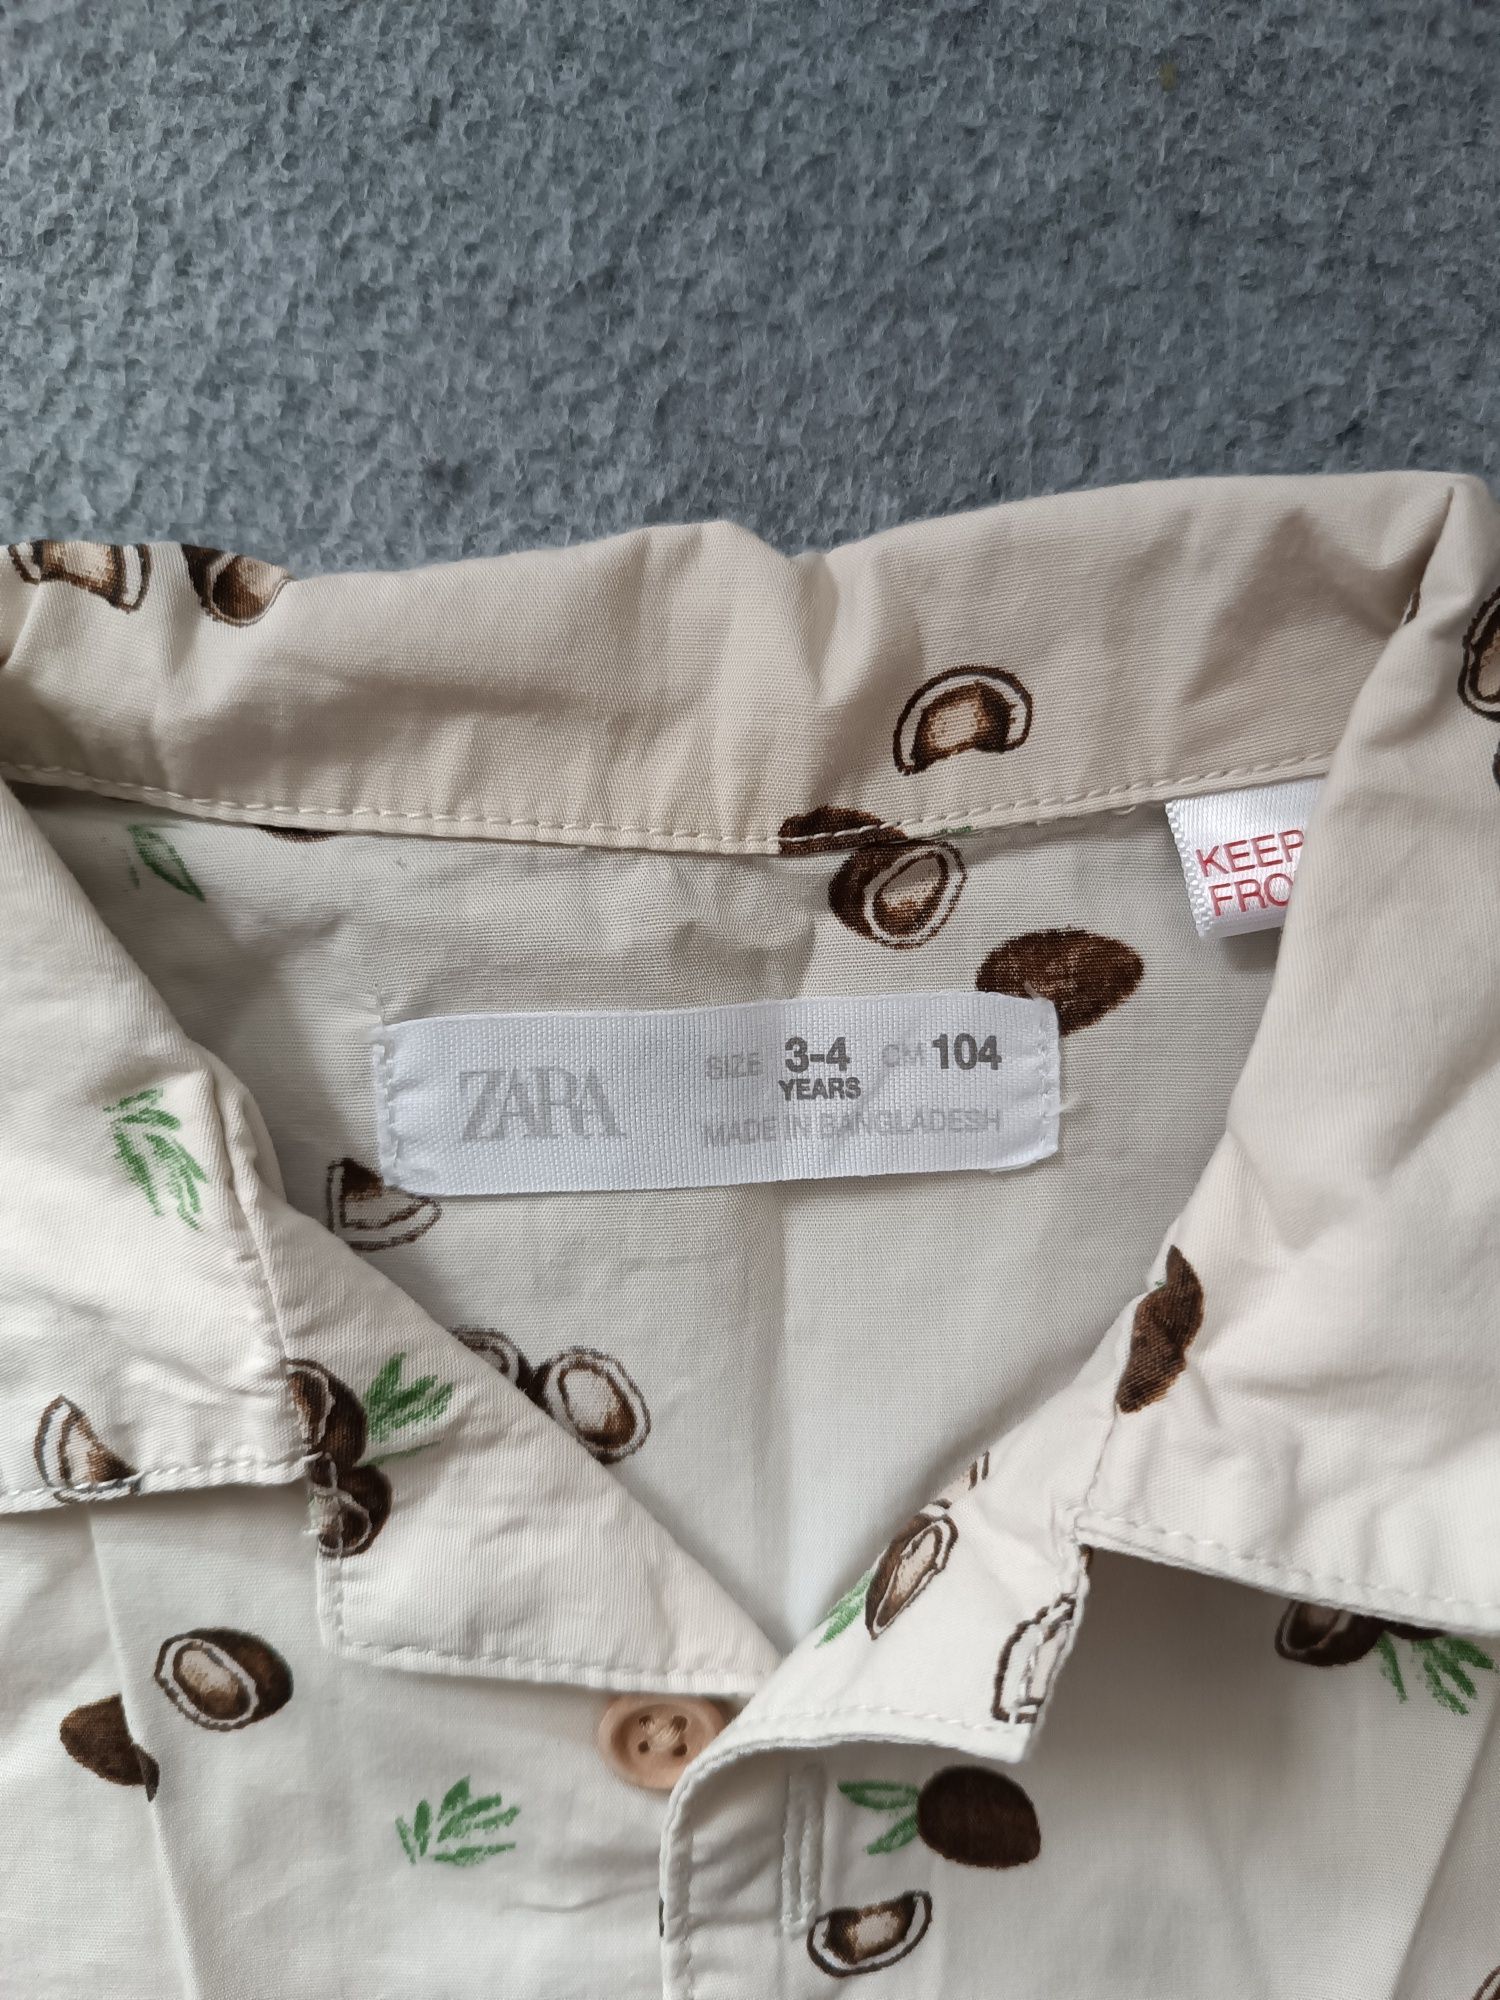 Koszula z krótkim rękawem, Zara, rozmiar 104,kokosy